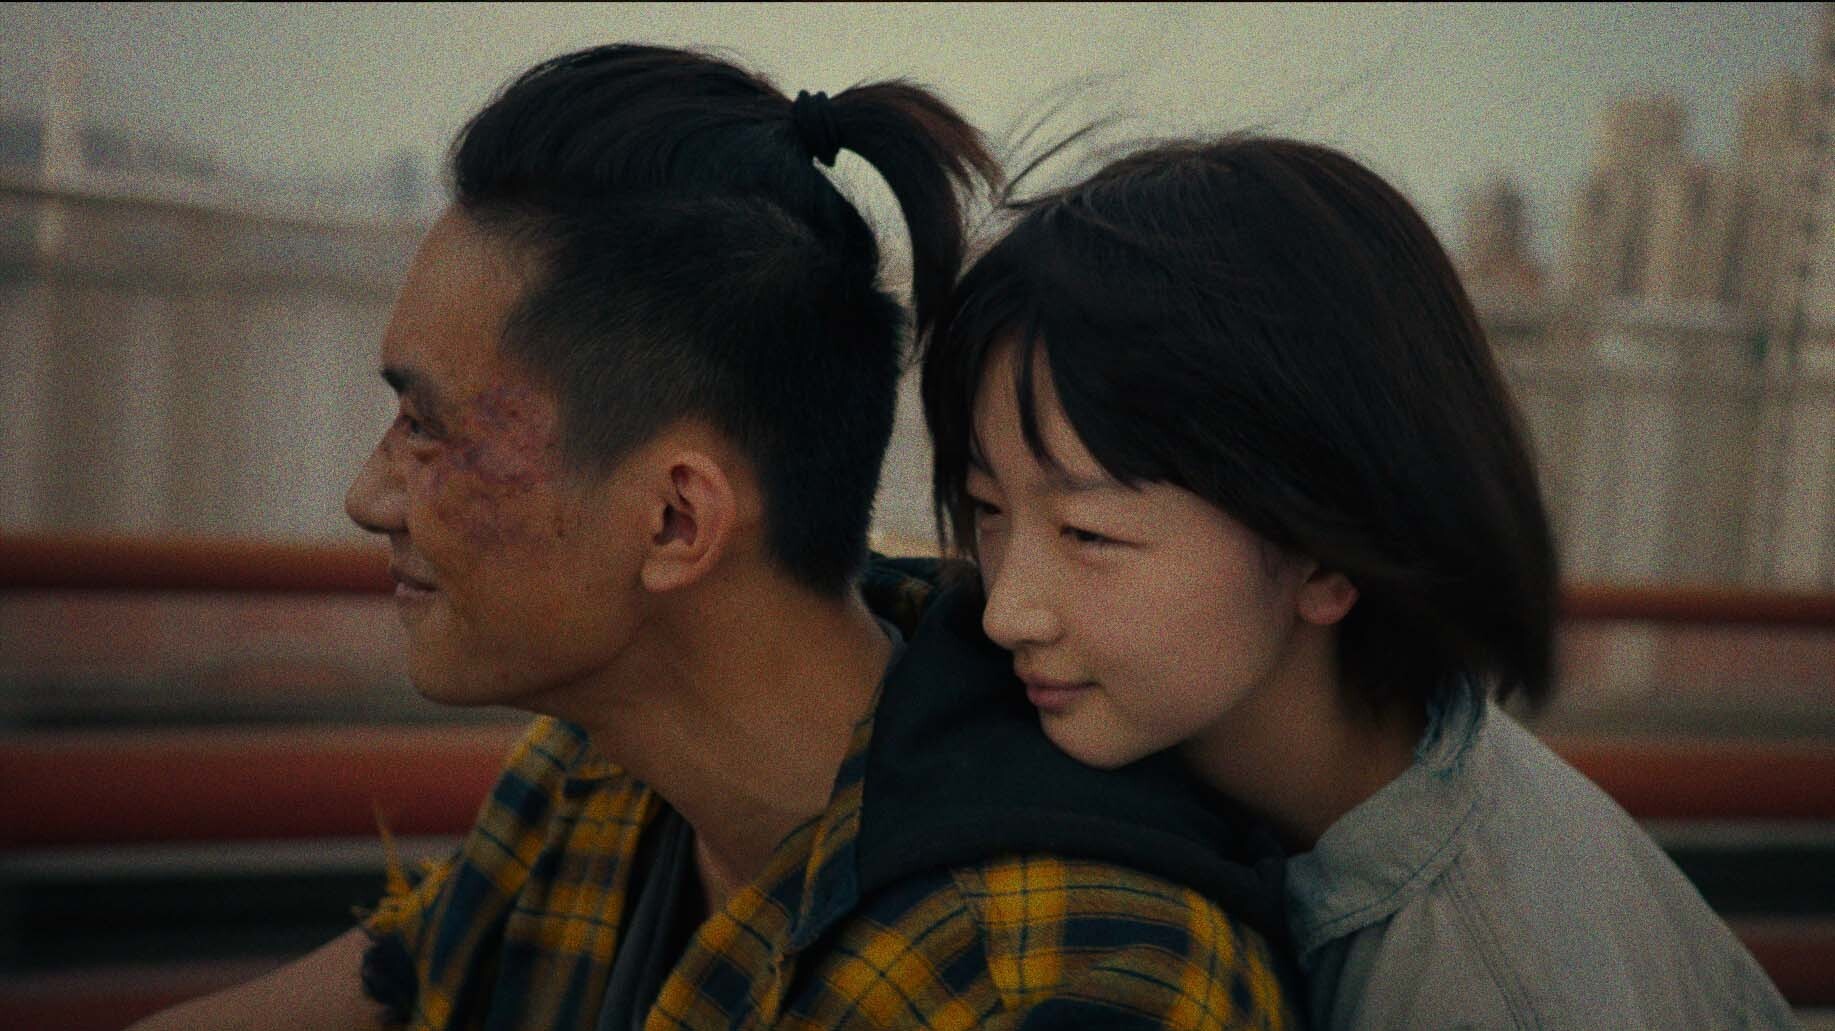 BETTER DAYS Wins 8 Hong Kong Film Awards